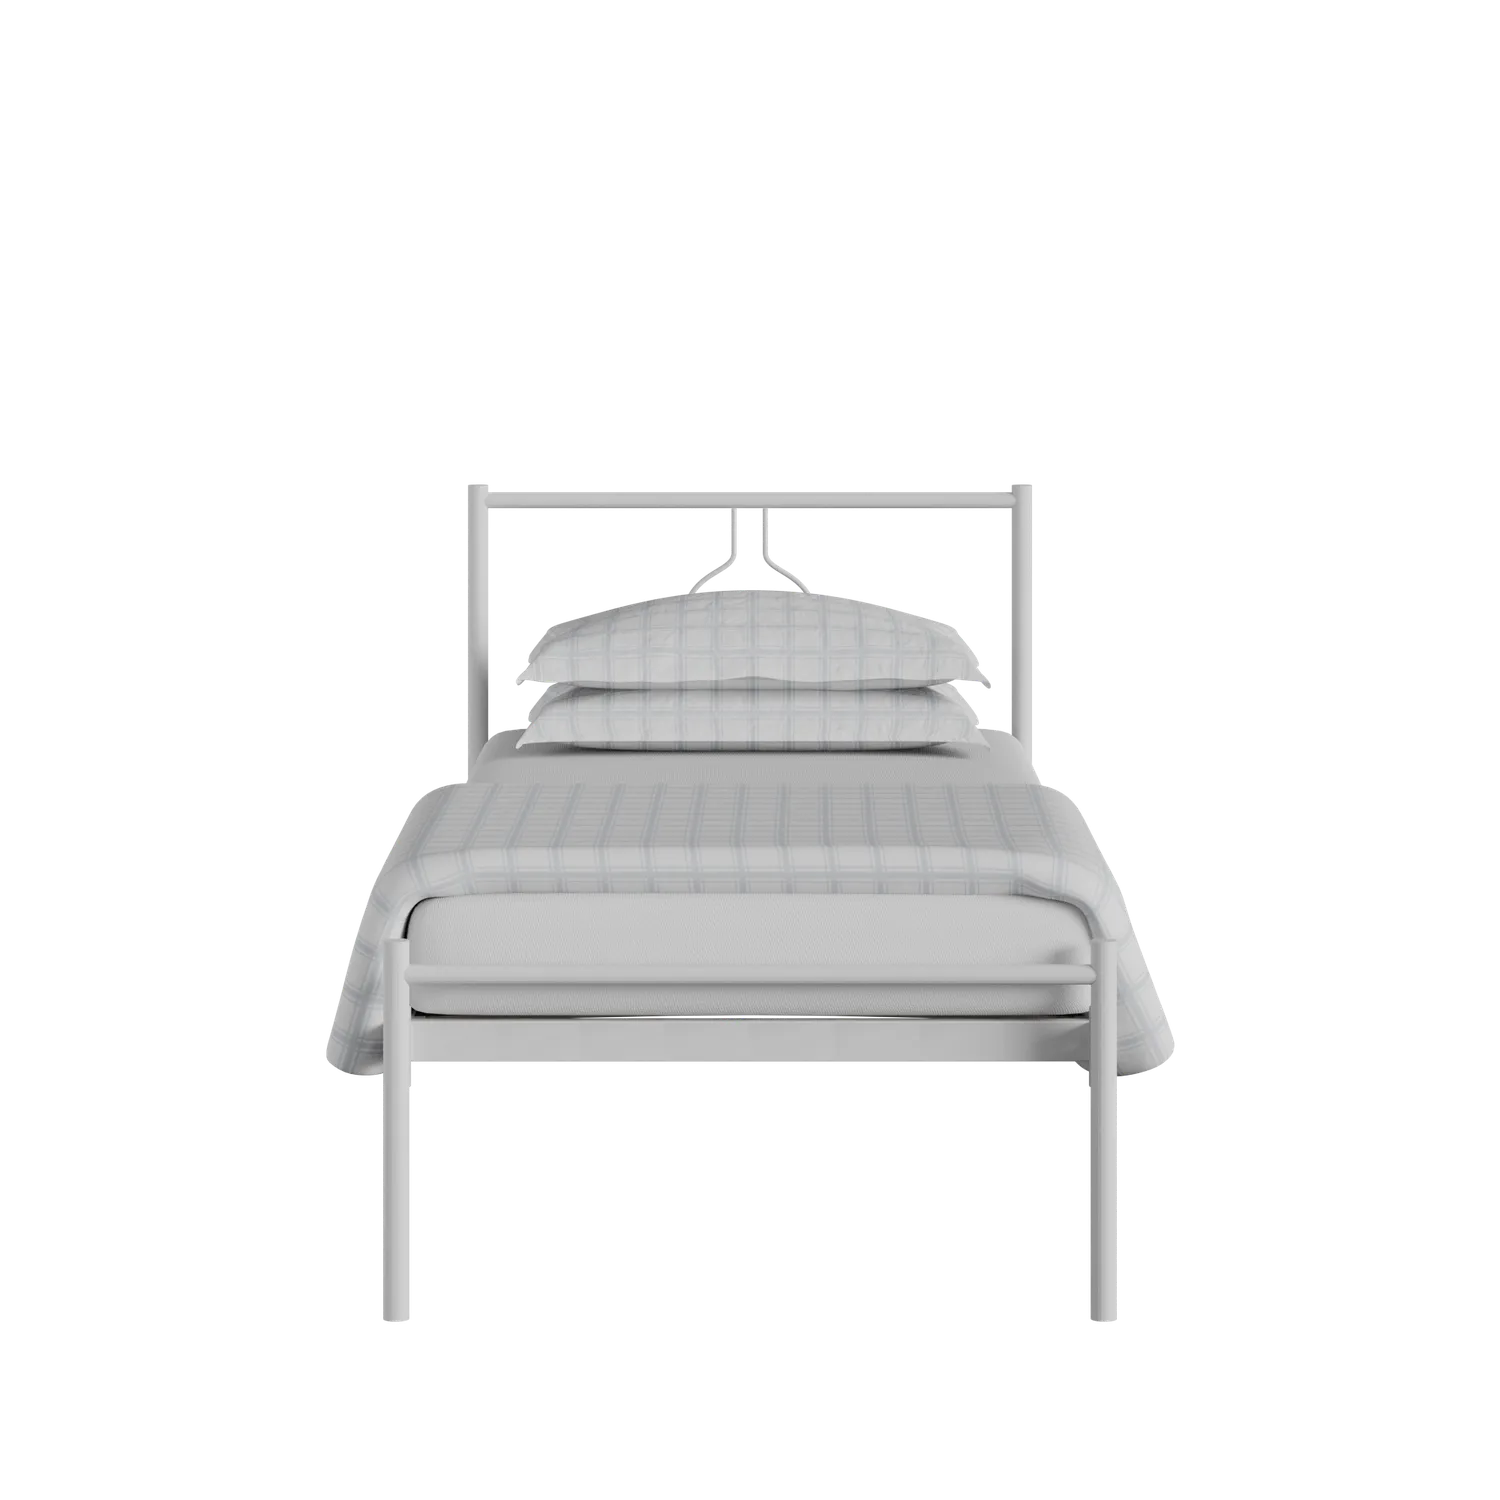 Meiji cama individual de metal en blanco